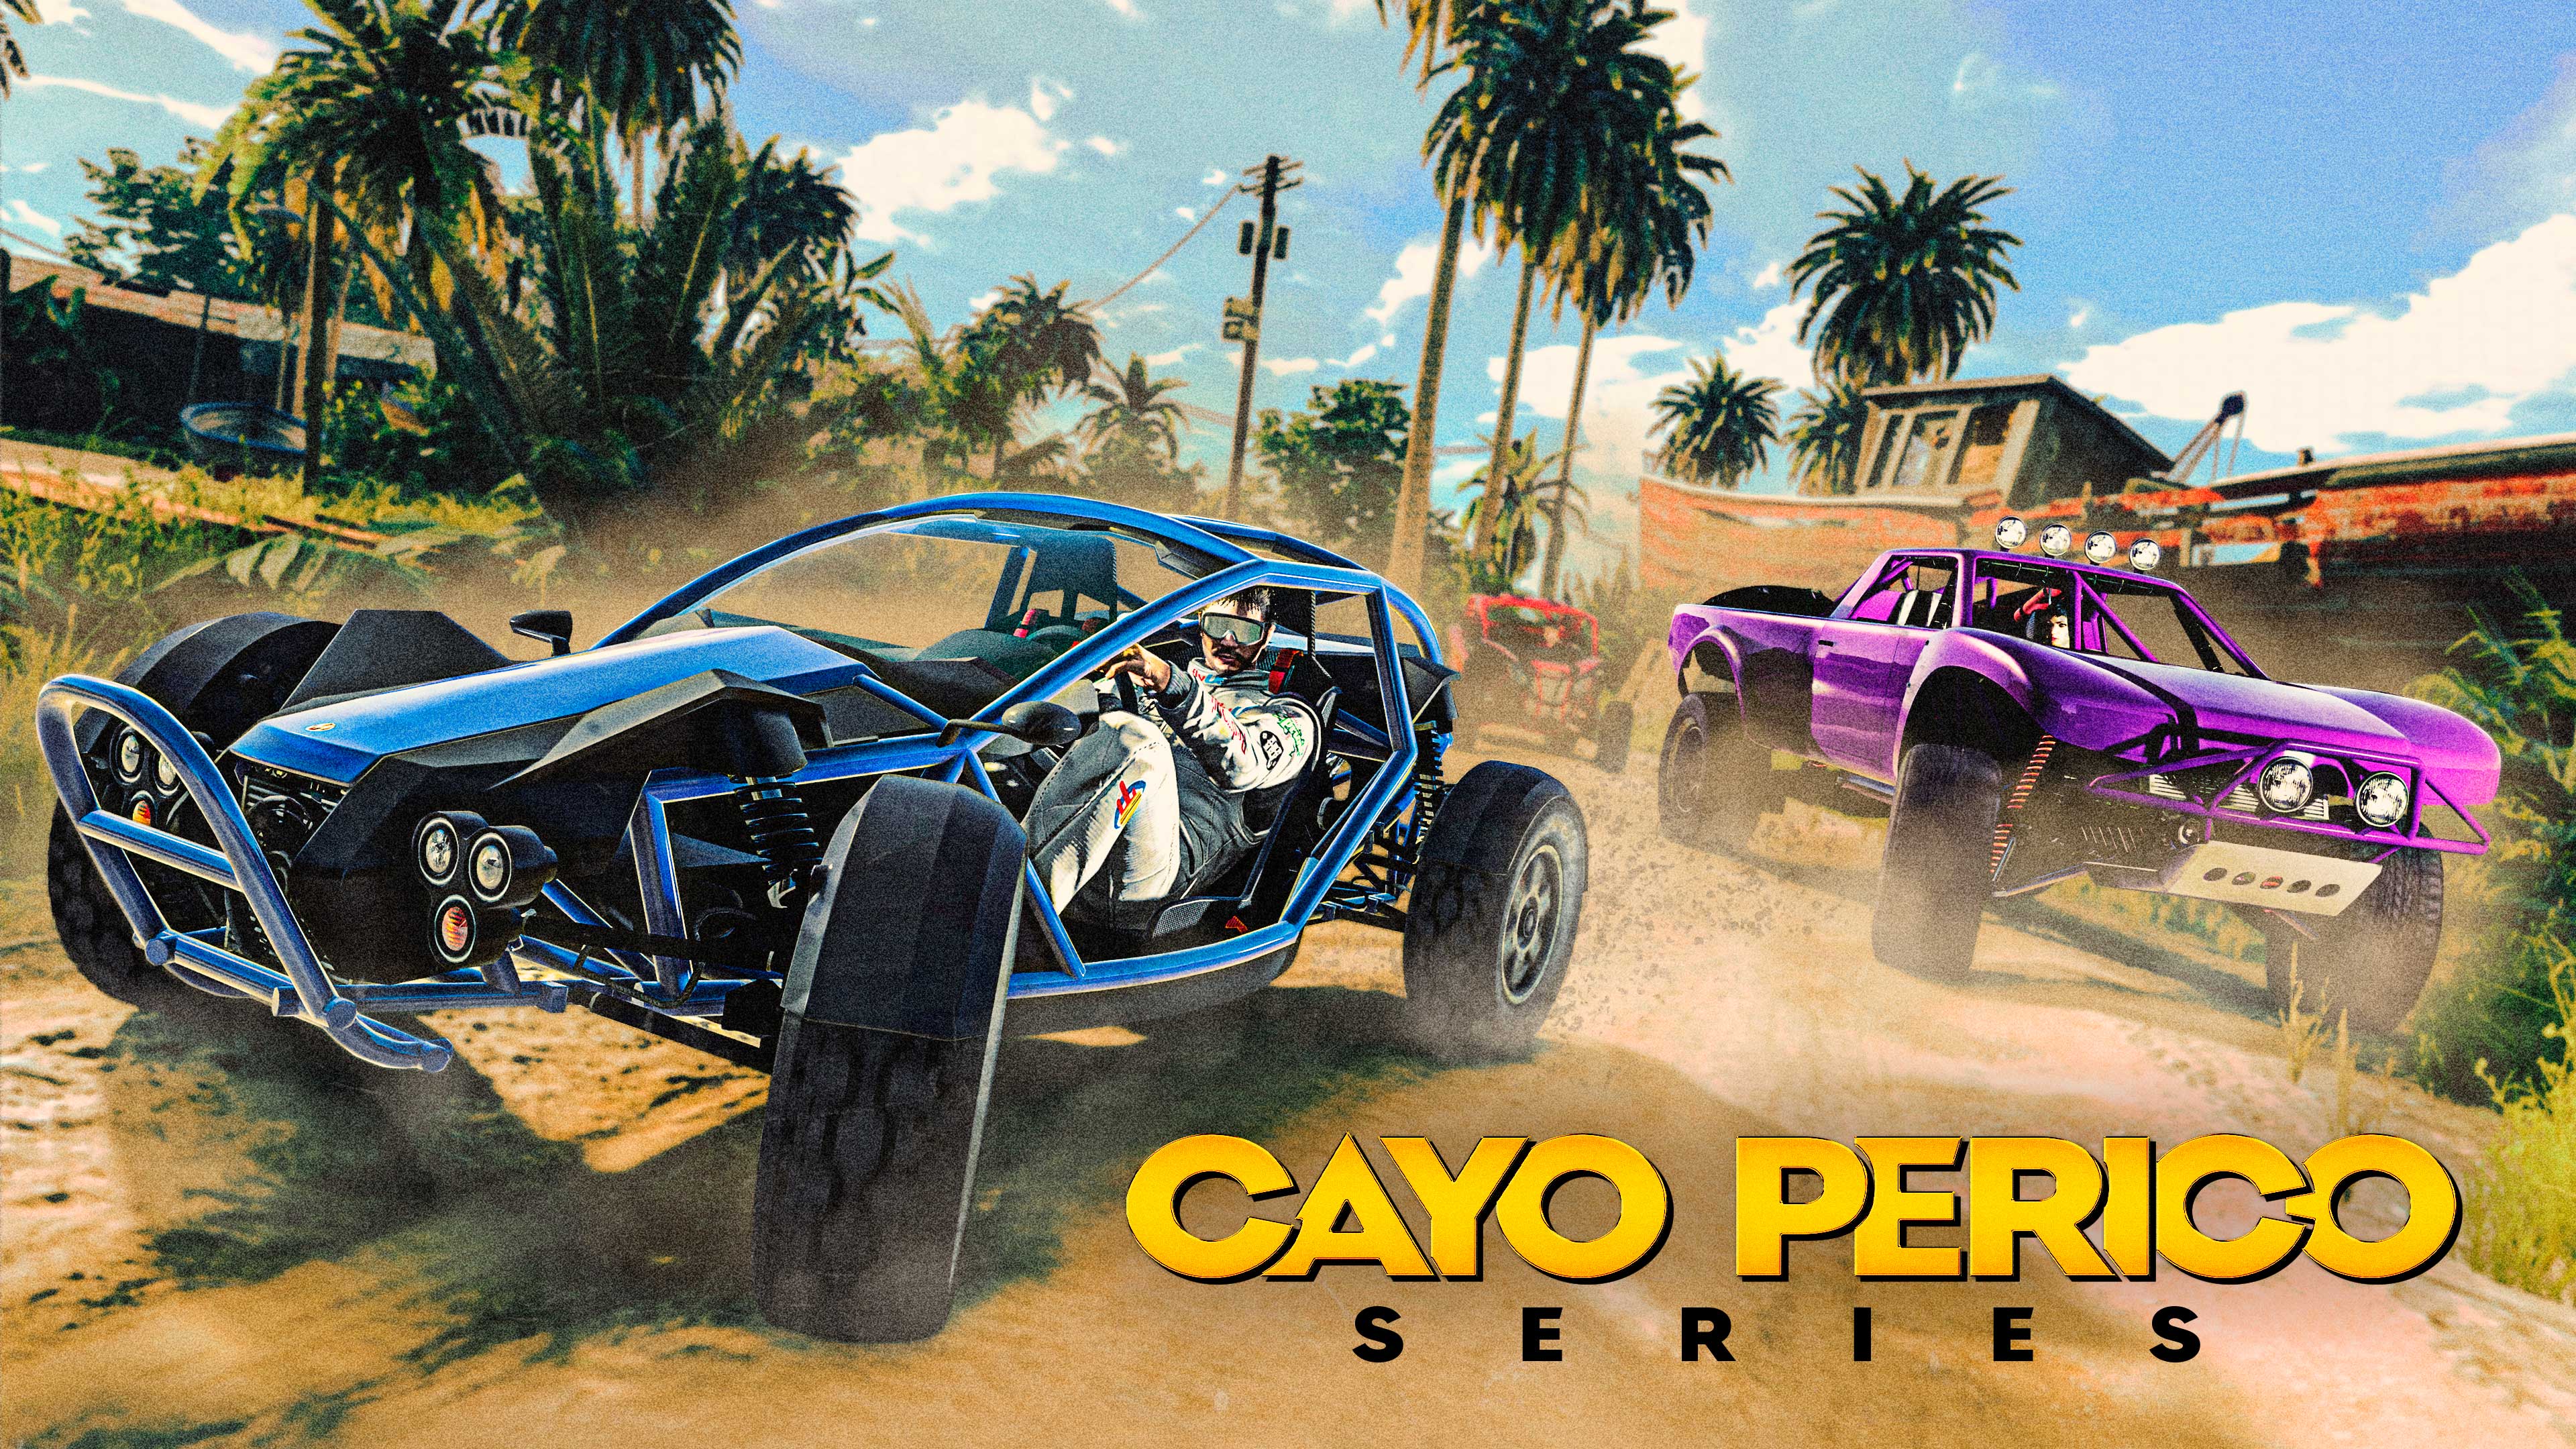 Cayo Perico em Série no GTA Online